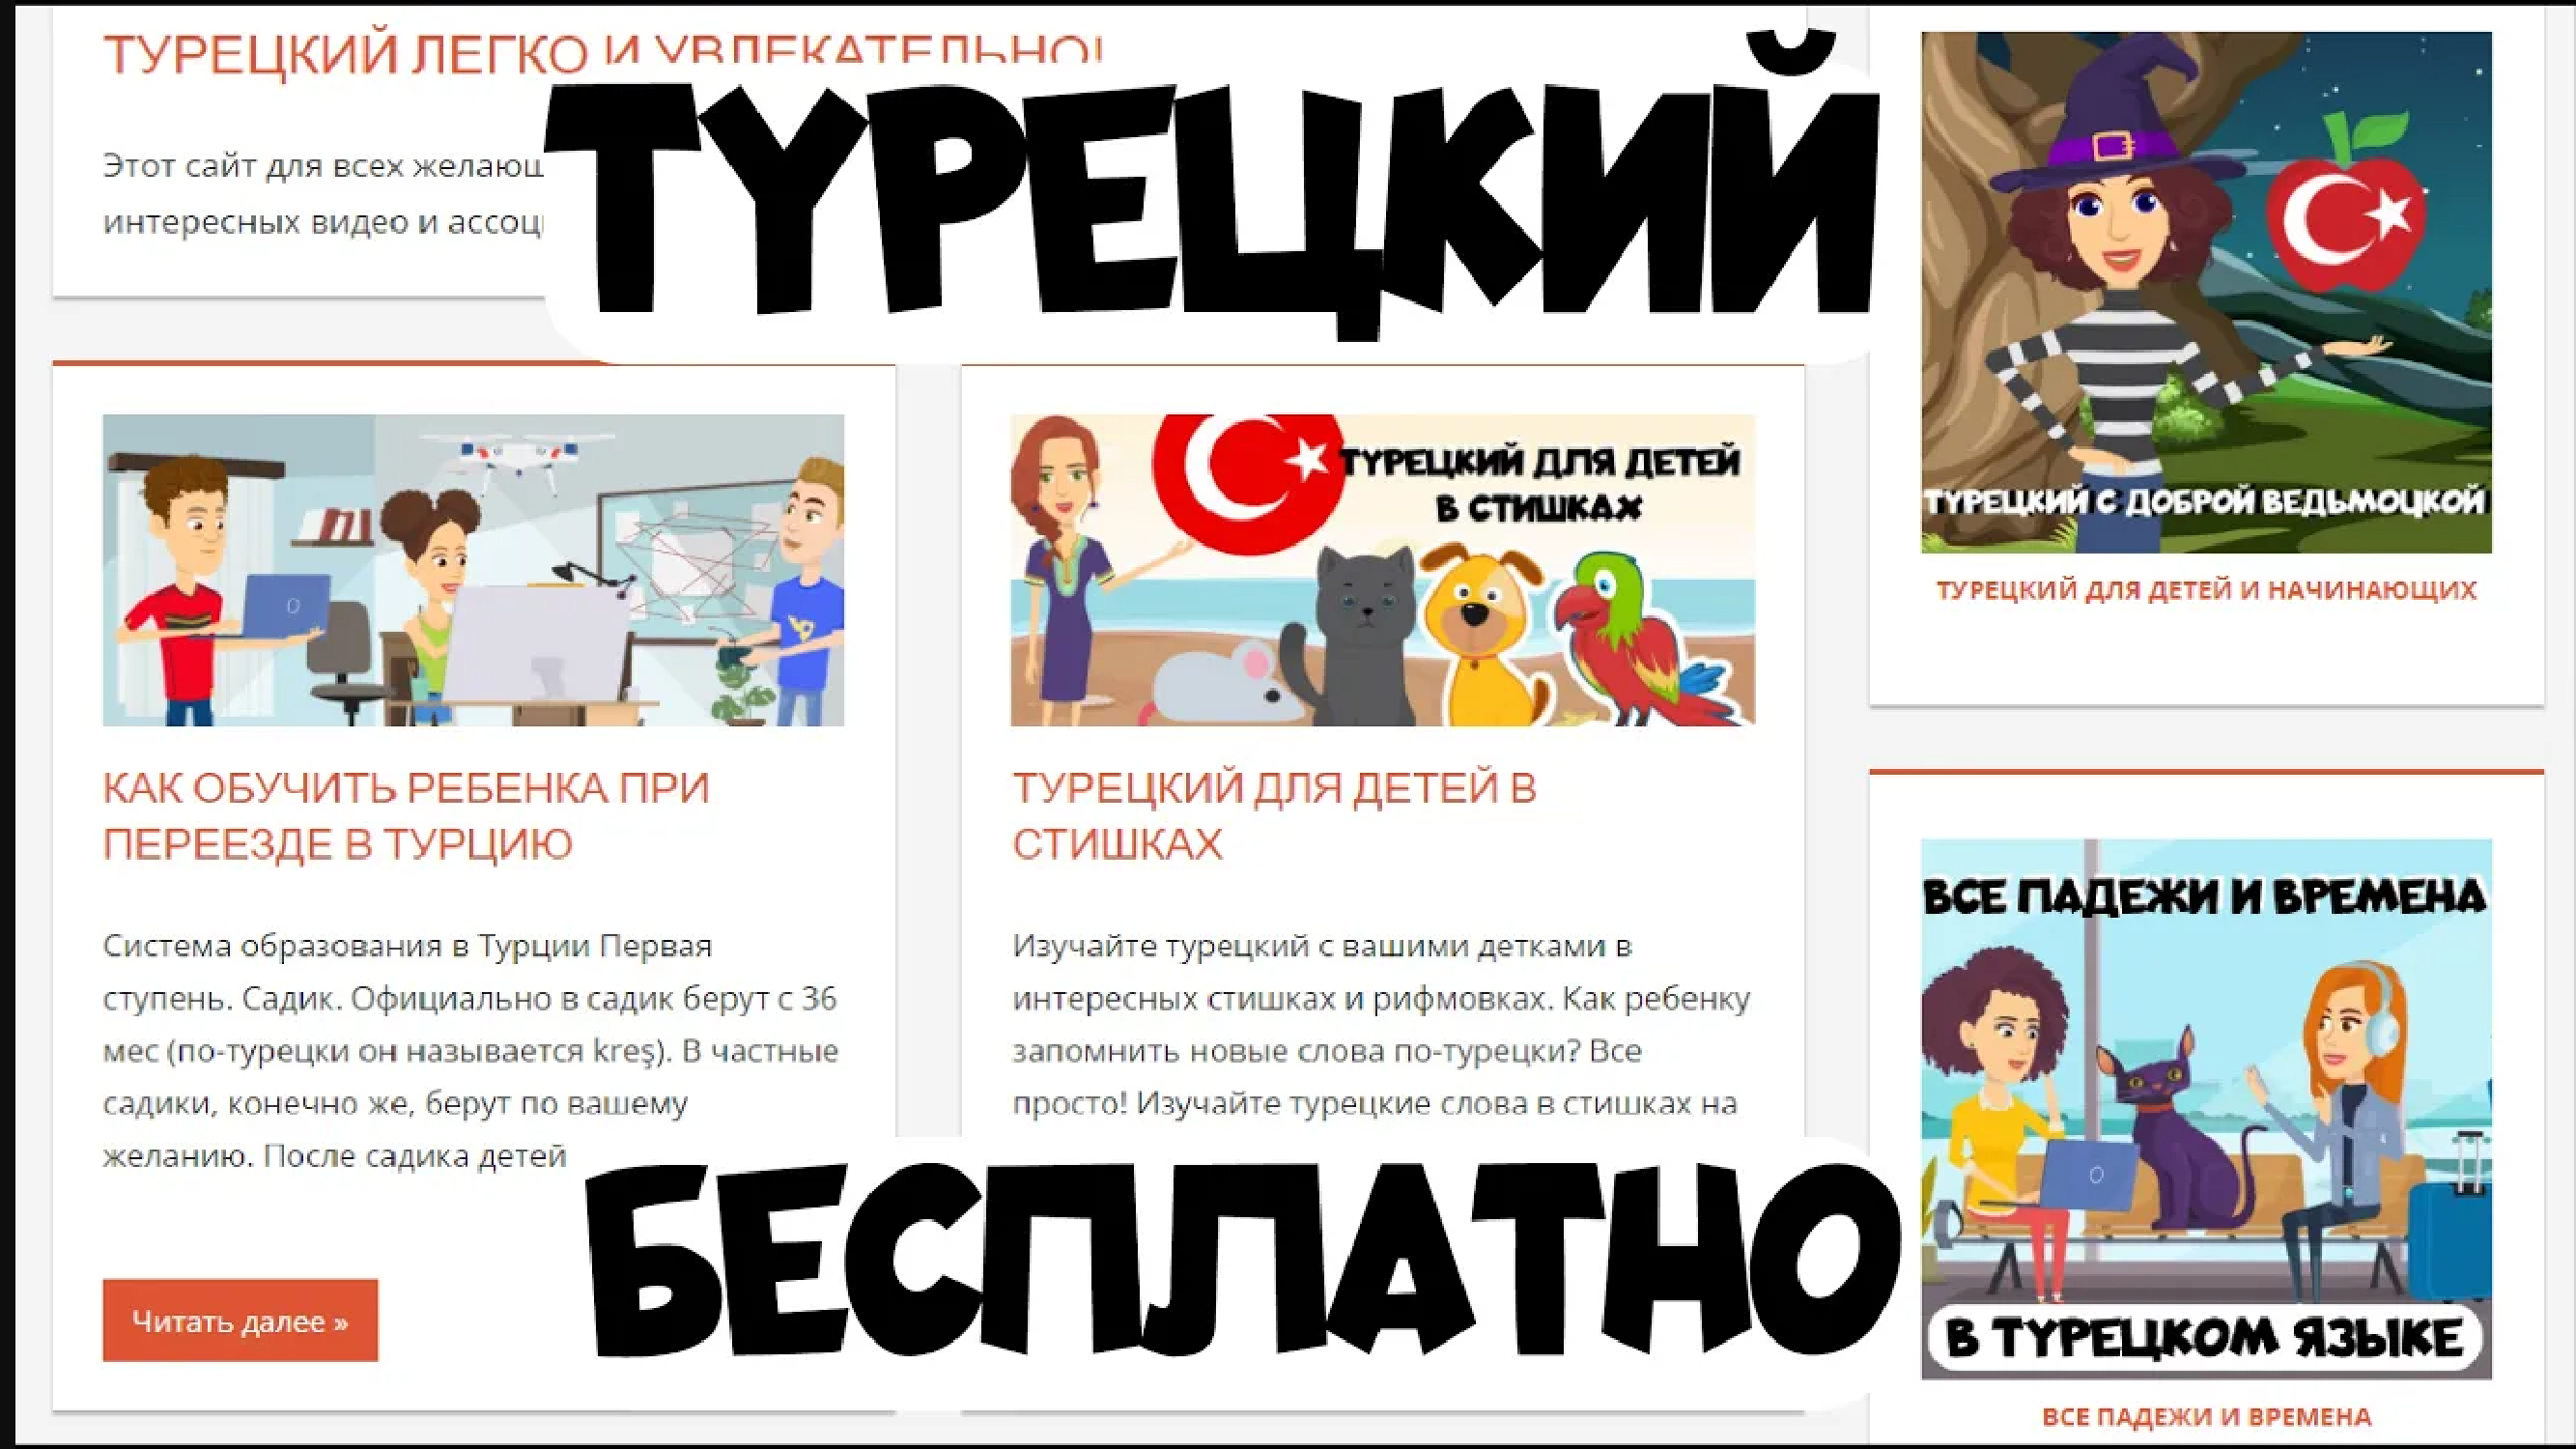 Бесплатные материалы для изучения турецкого языка! Скачивайте раскраски, словари, учебники бесплатно